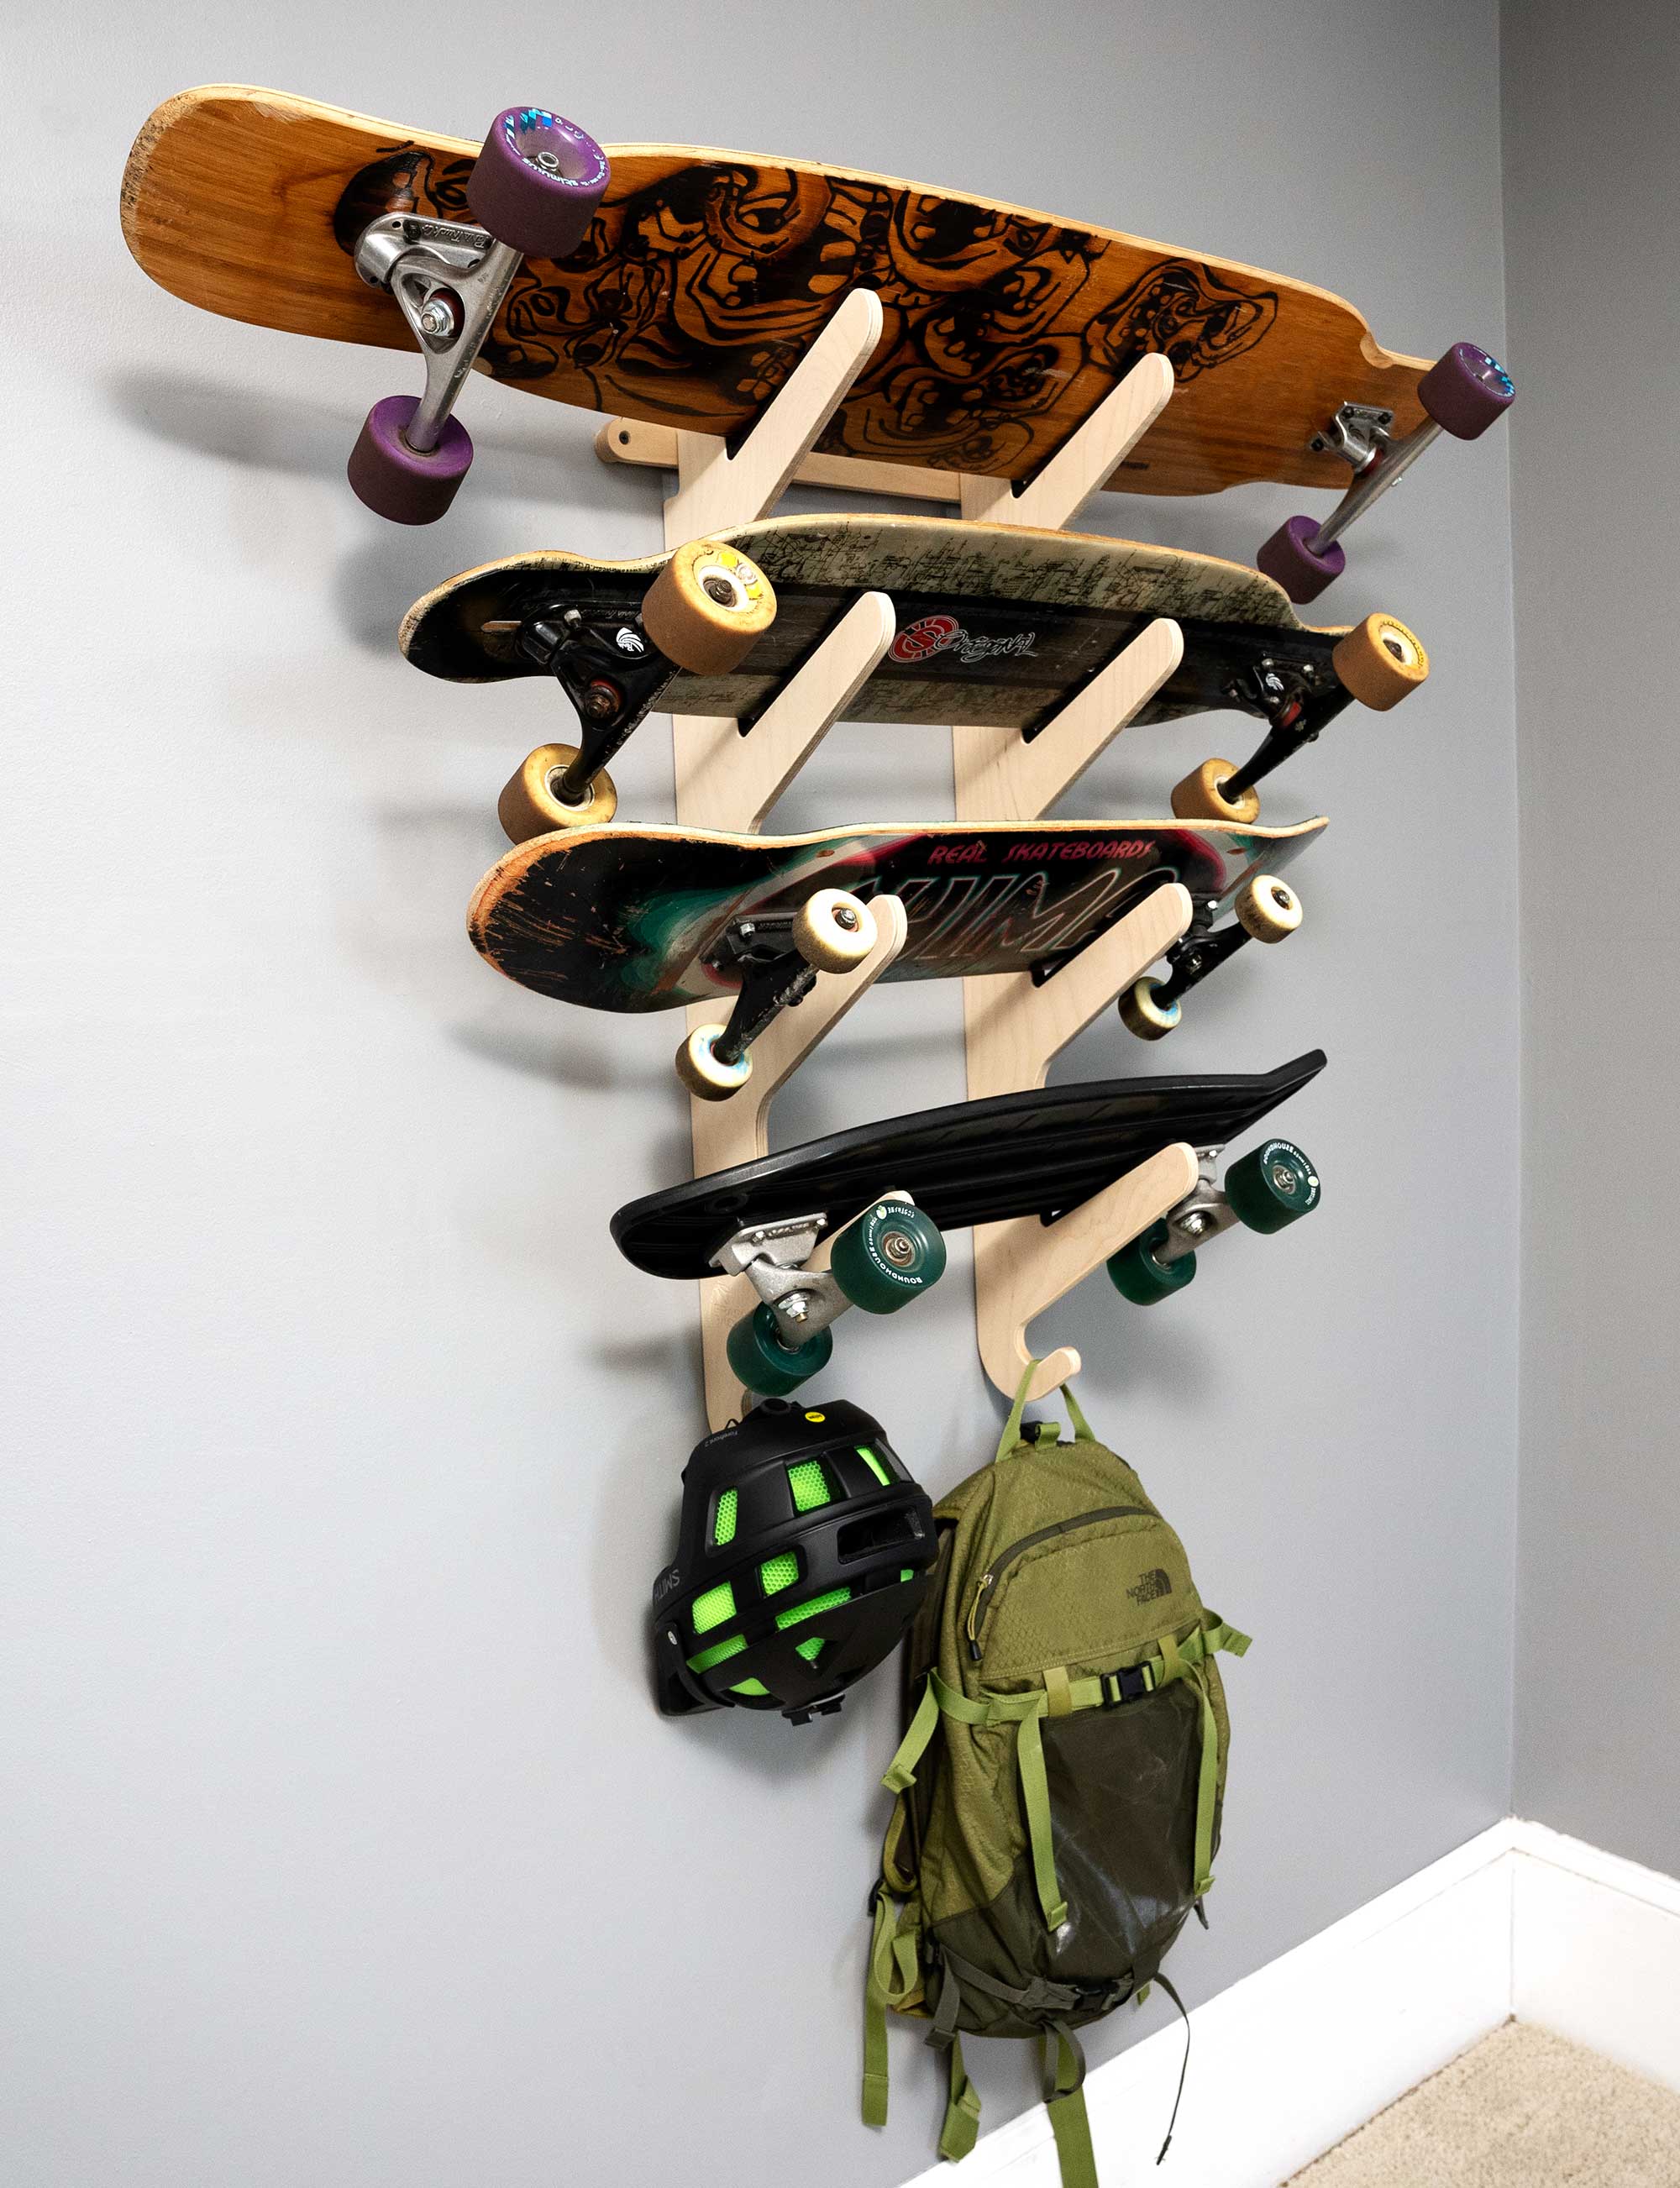 4 Board Skateboard Rack - Wall-Mounted Rack for Longboards